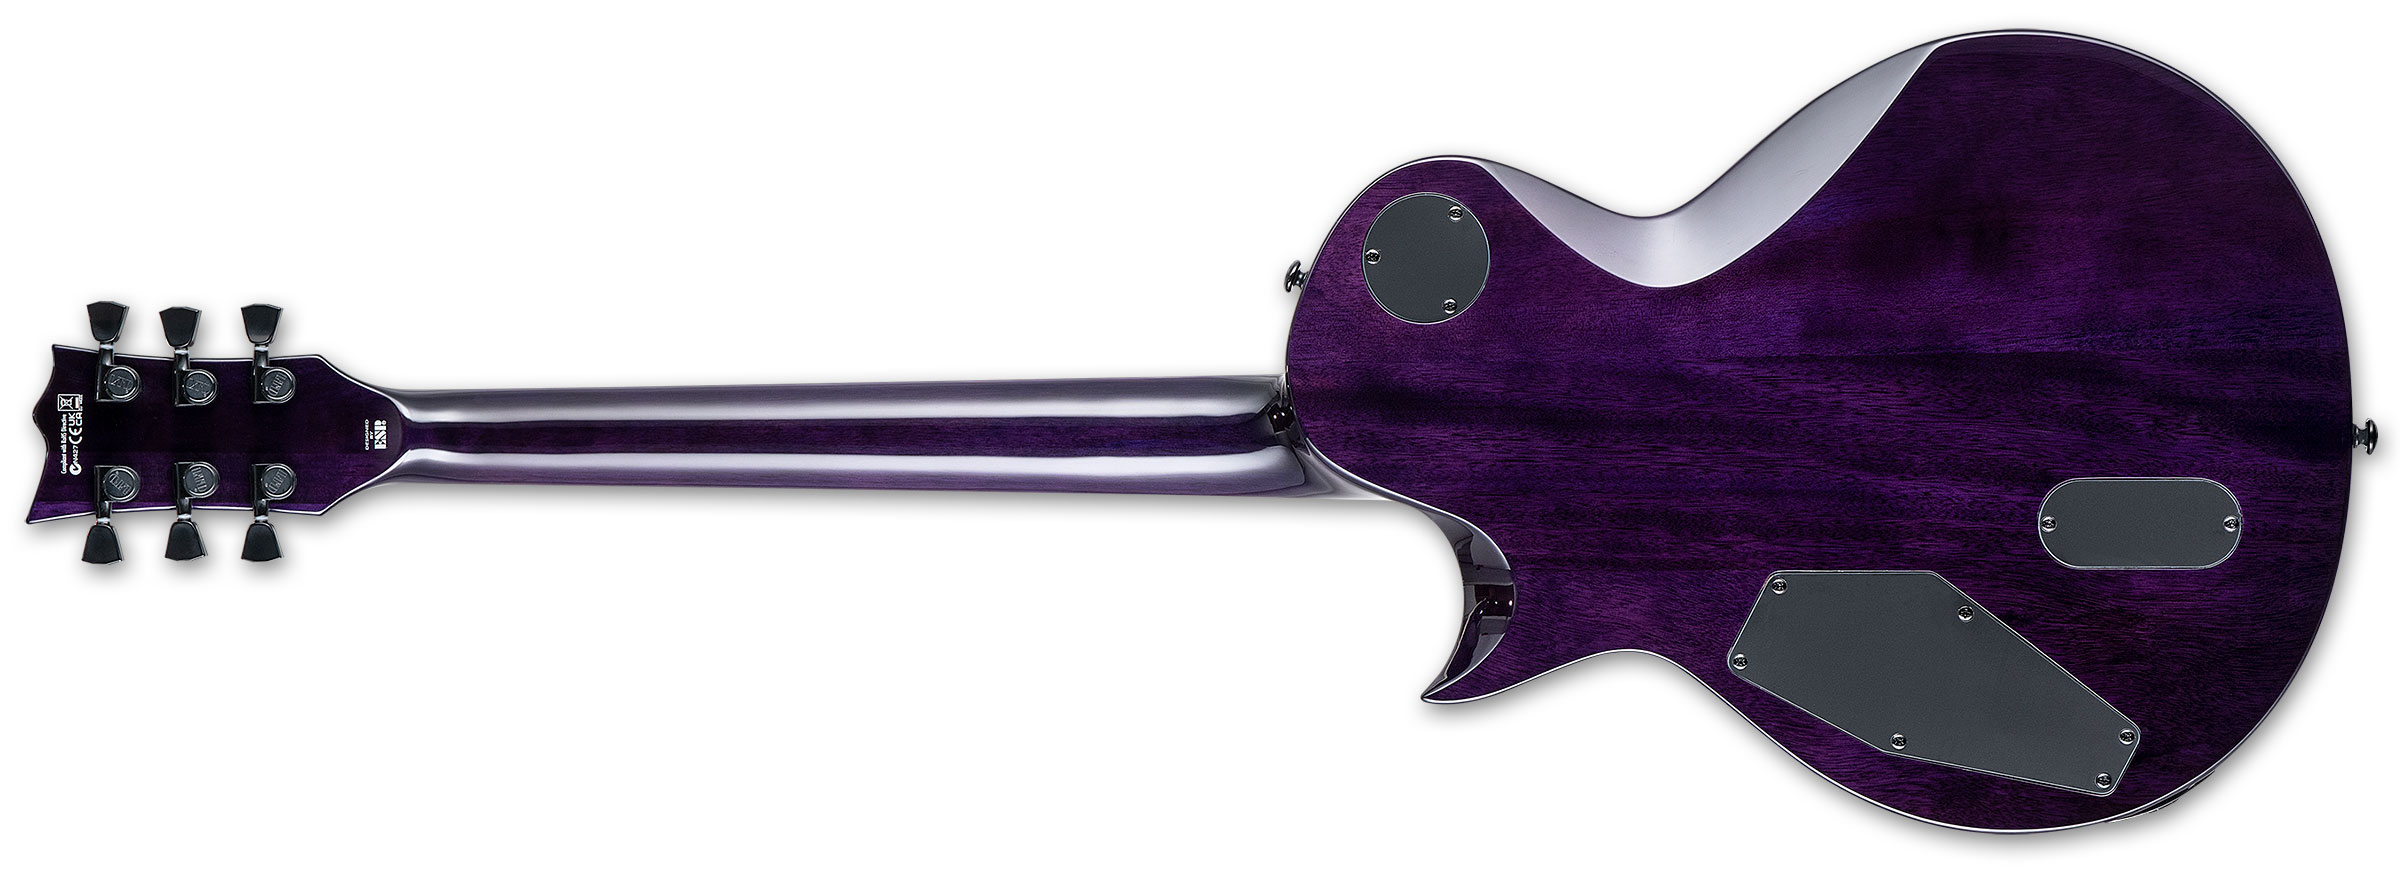 Ltd Ec-1000 Hh Ht Emg Eb - See Thru Purple Sunburst - Enkel gesneden elektrische gitaar - Variation 2